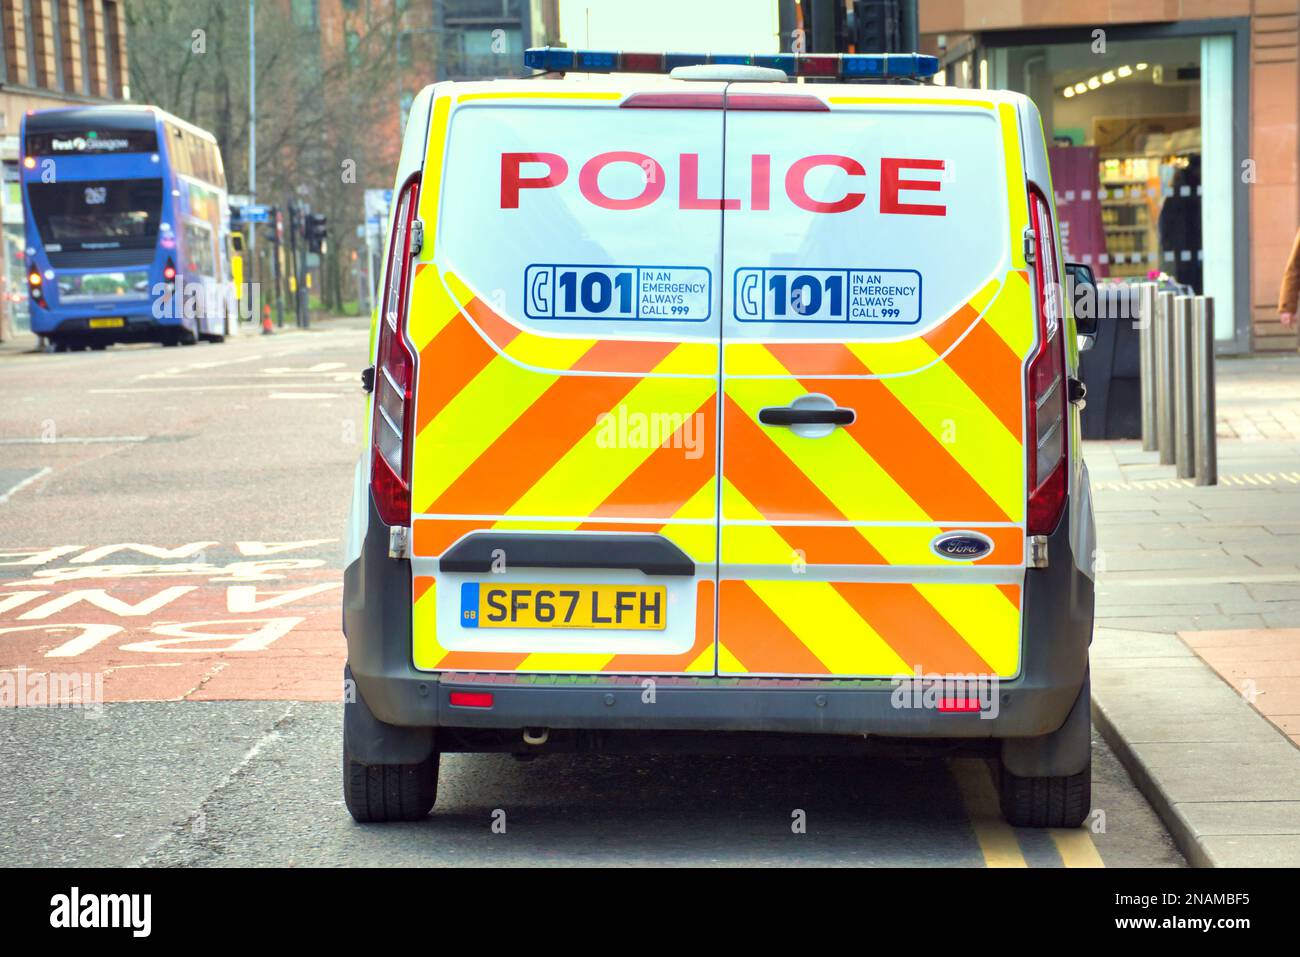 Historique de bus police Ecosse alba poleas 911 van car Glasgow, Ecosse, Royaume-Uni Banque D'Images